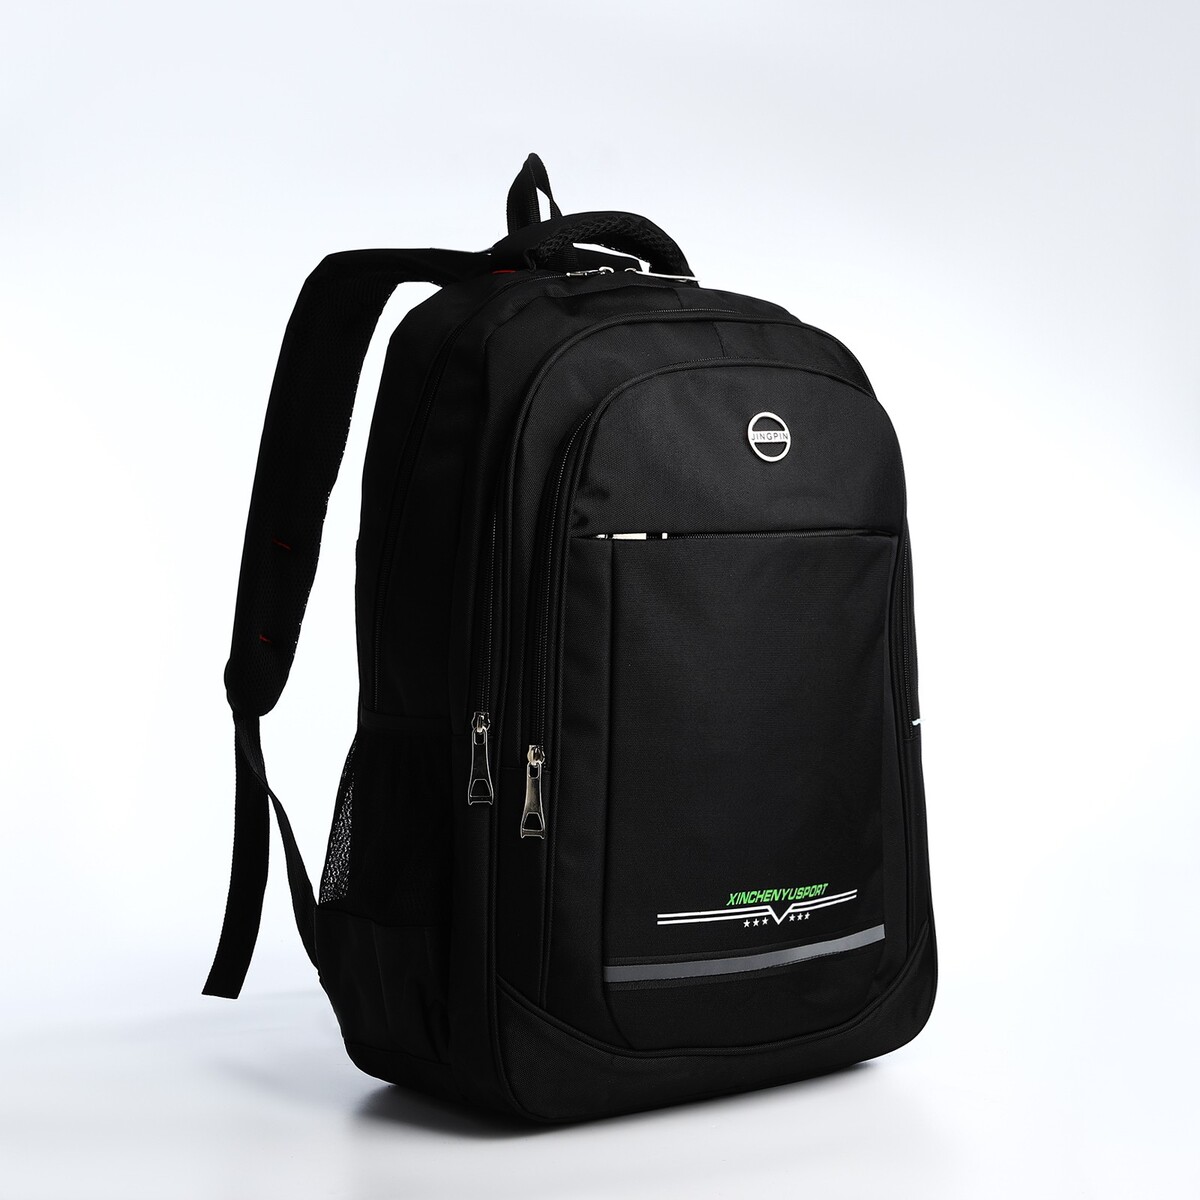 Рюкзак молодежный из текстиля, 2 отдела на молнии, 4 кармана, цвет черный/зеленый рюкзак школьный 2 отдела молнии 3 кармана зеленый